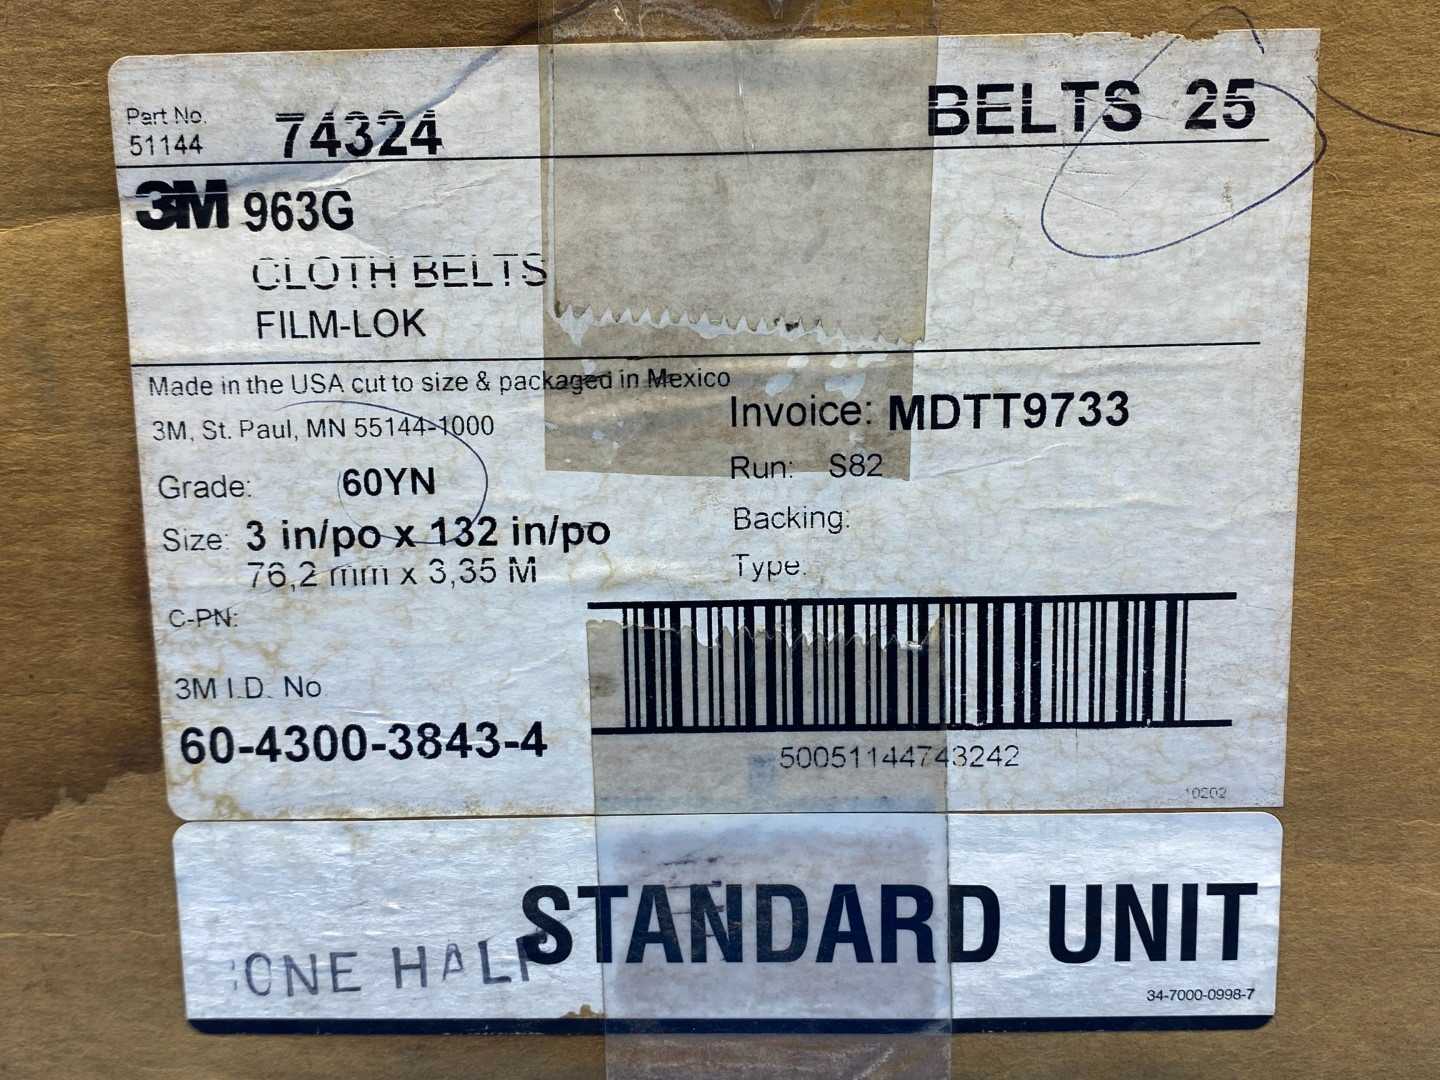 3M 963G Cloth Belts FILM-LOK Grade 60YN 3" x 132" (25 per box)